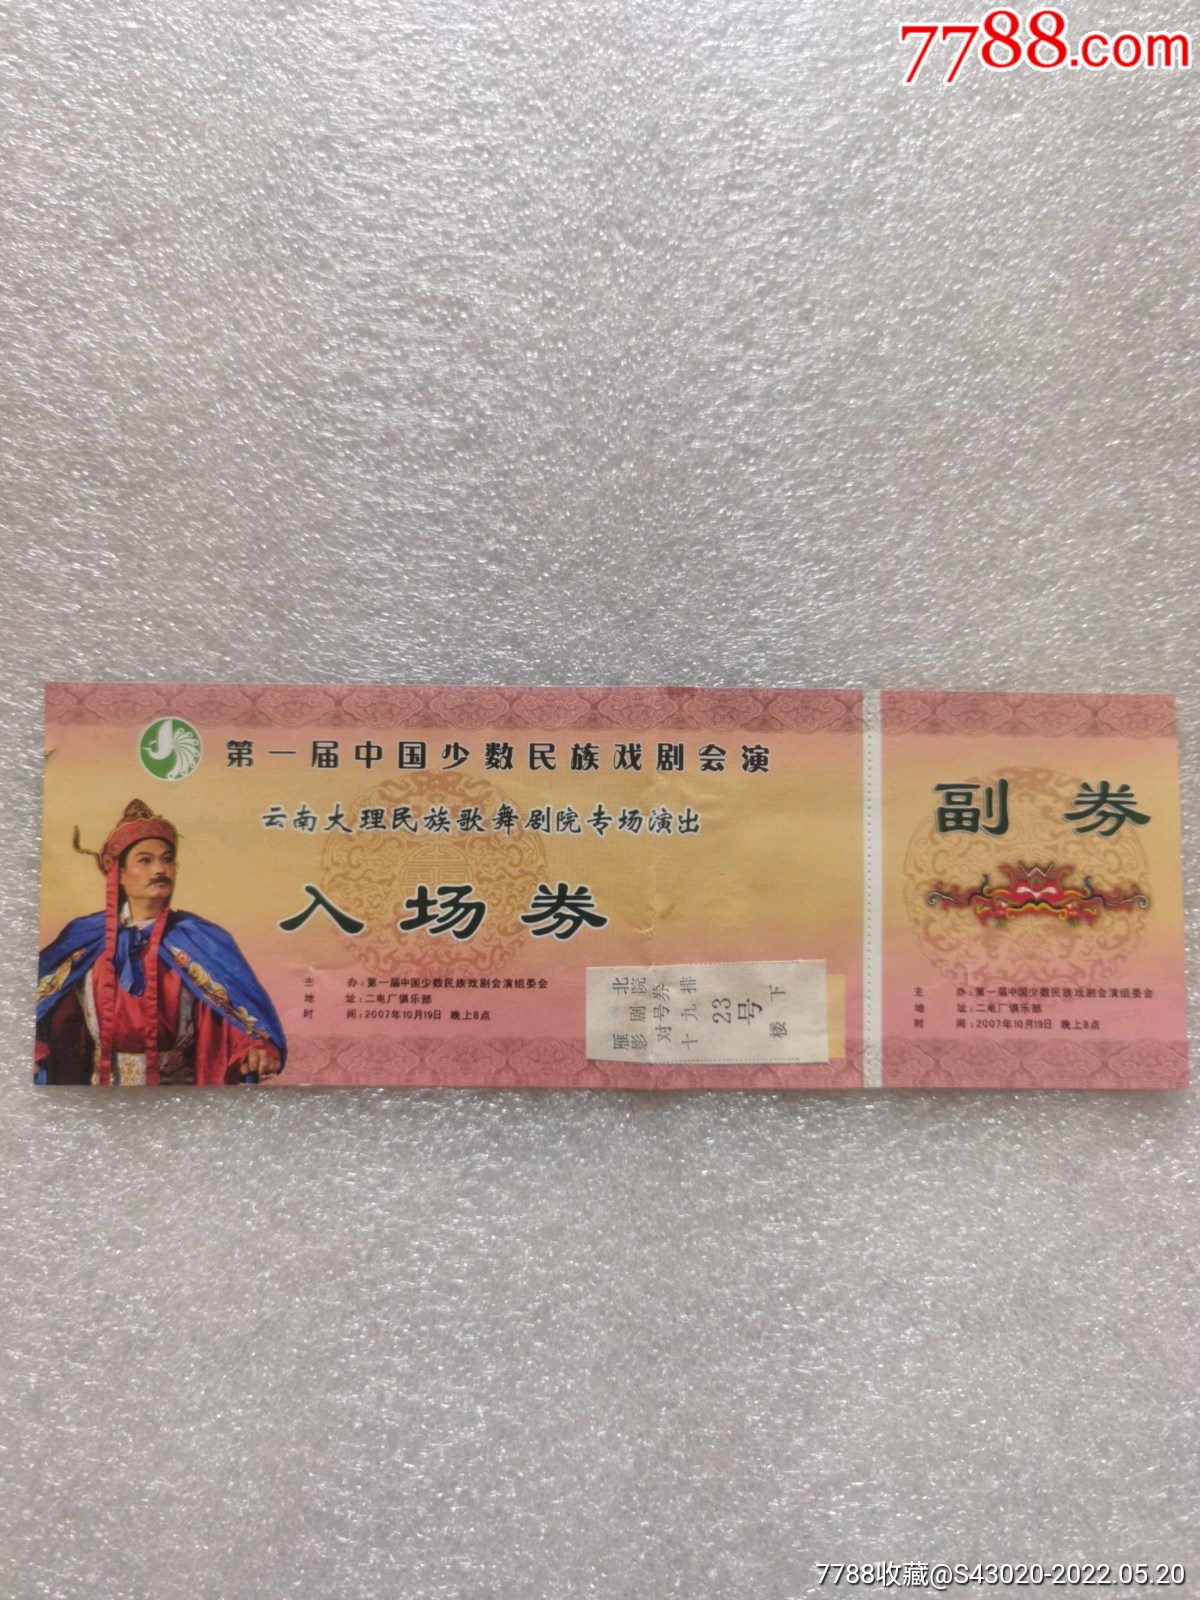 第一届中国少数民族戏剧会演云南大理民族歌舞剧院专场演出入场券